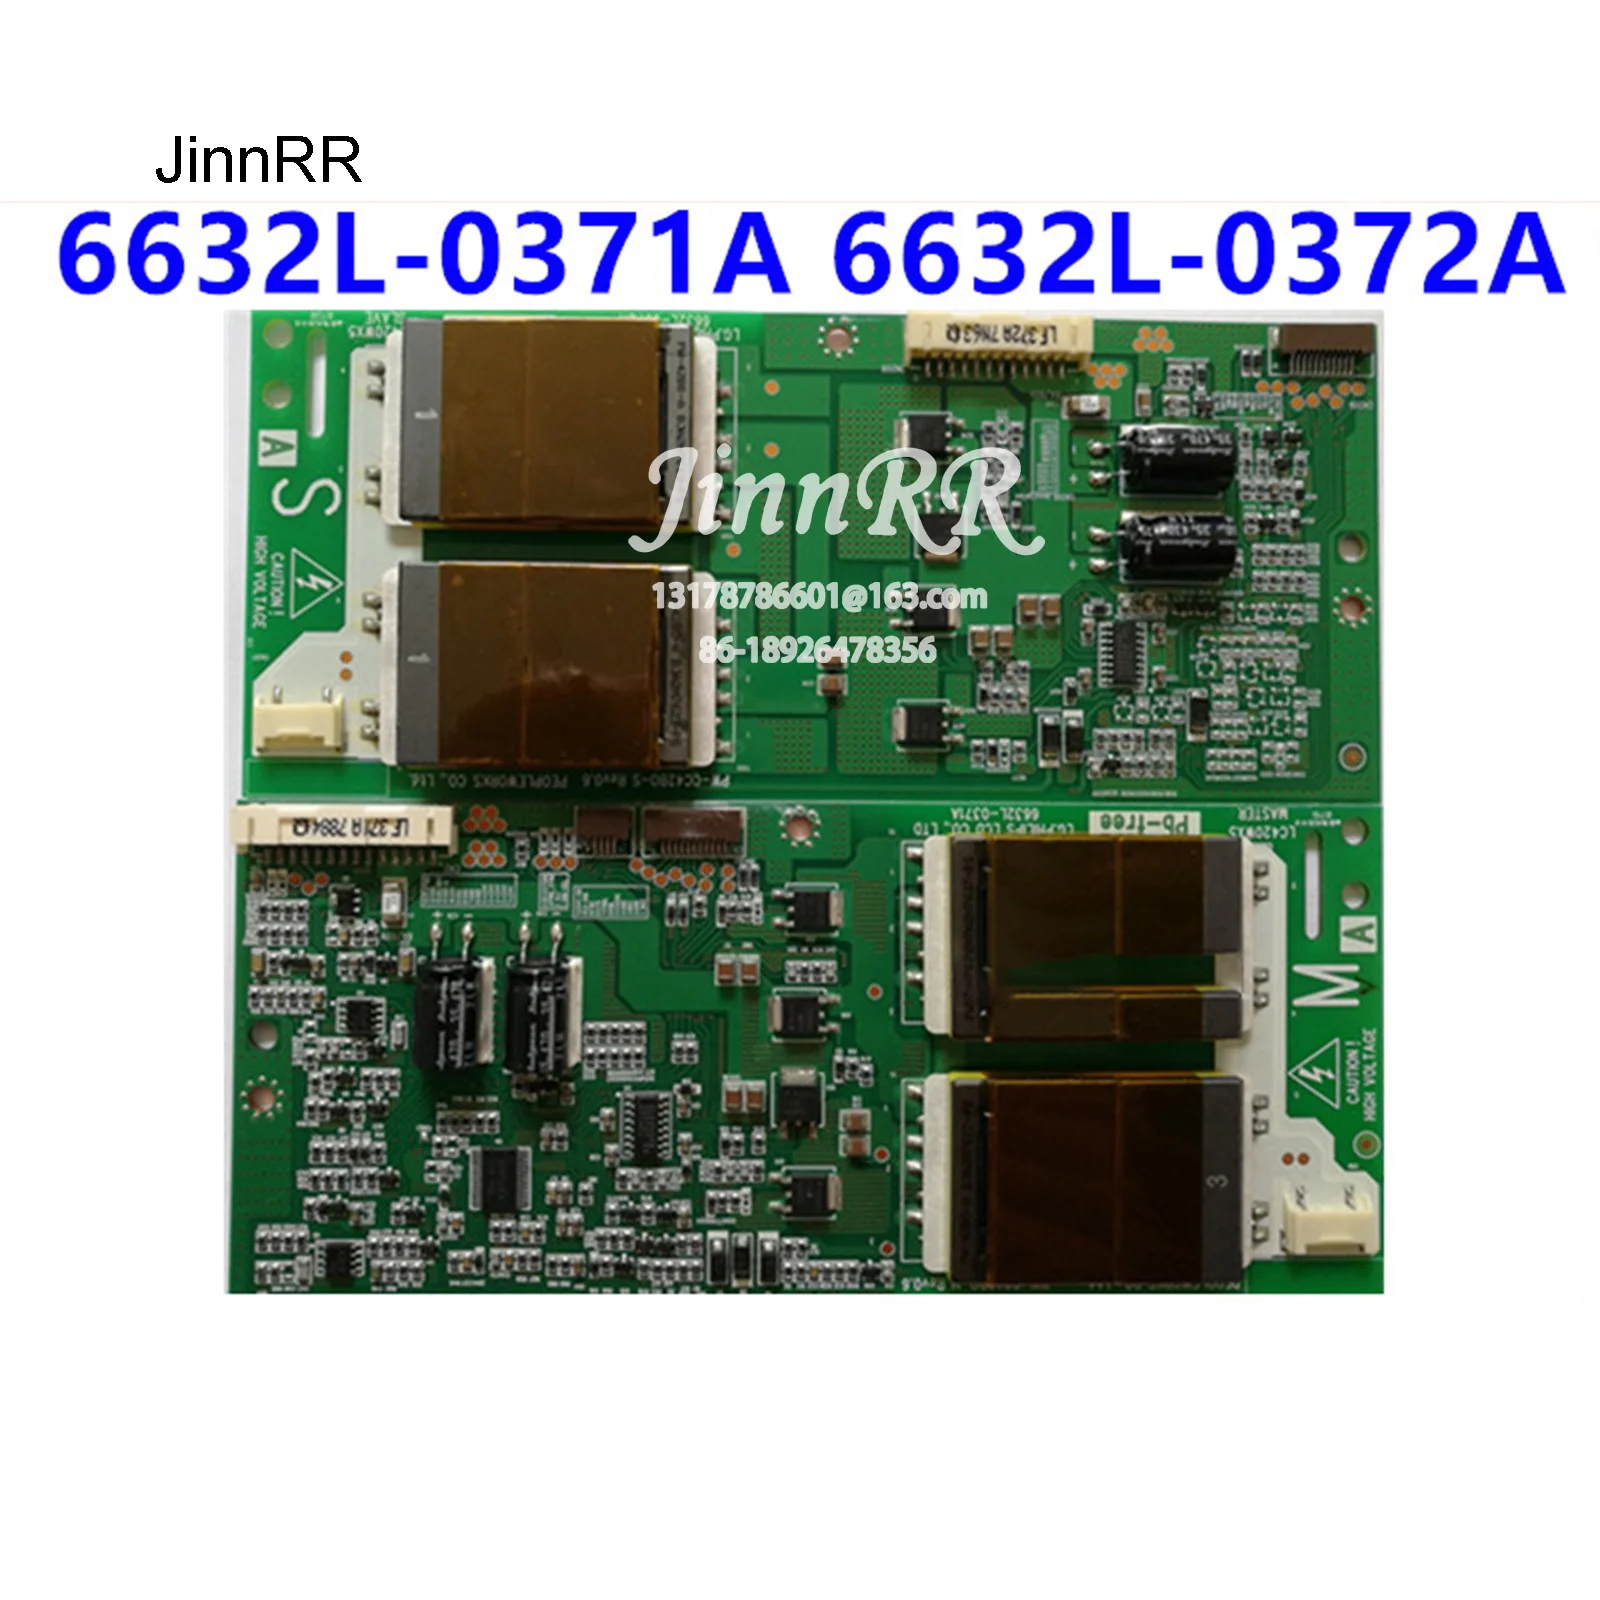 

6632L-0372A 6632L-0371A Original logic board For 42L16HC LC420WX5 Logic board Strict test quality assurance